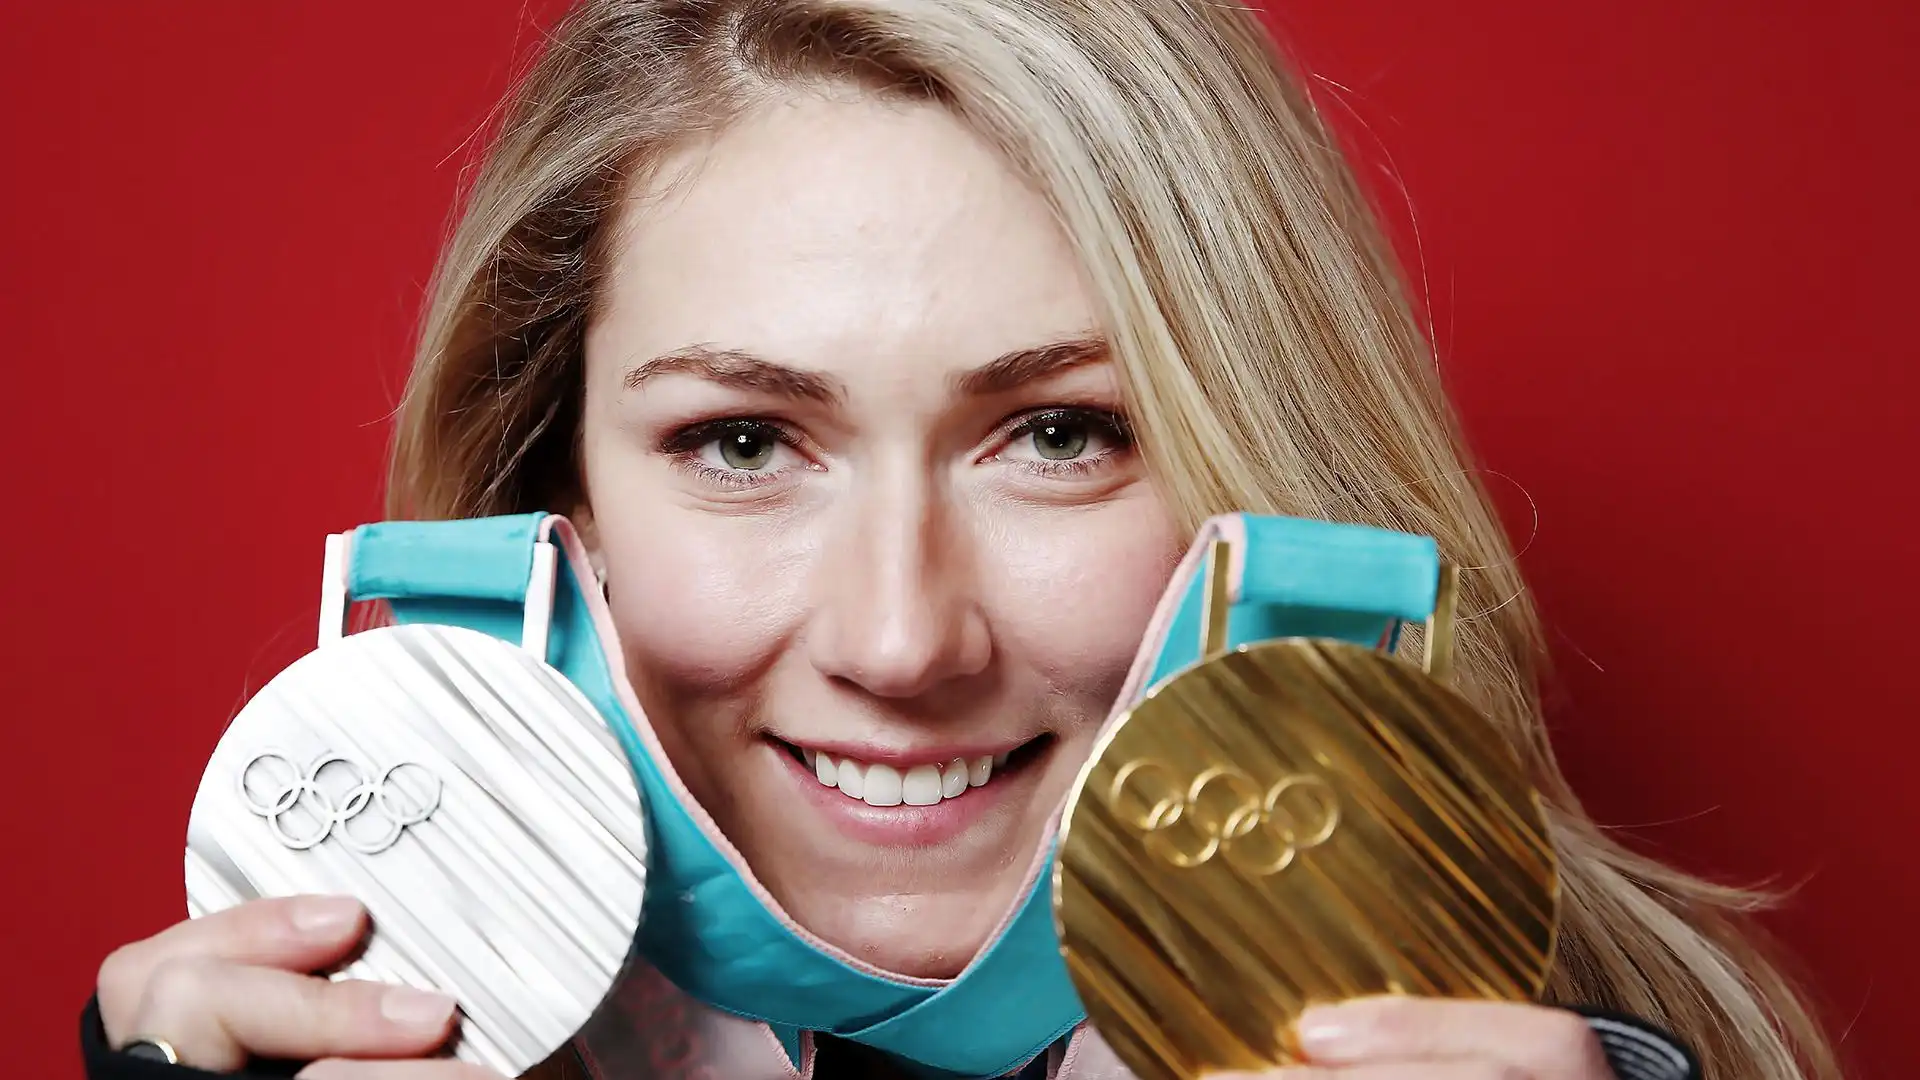 Tra le più grandi sciatrici di tutti i tempi ha vinto due titoli olimpici e sei mondiali